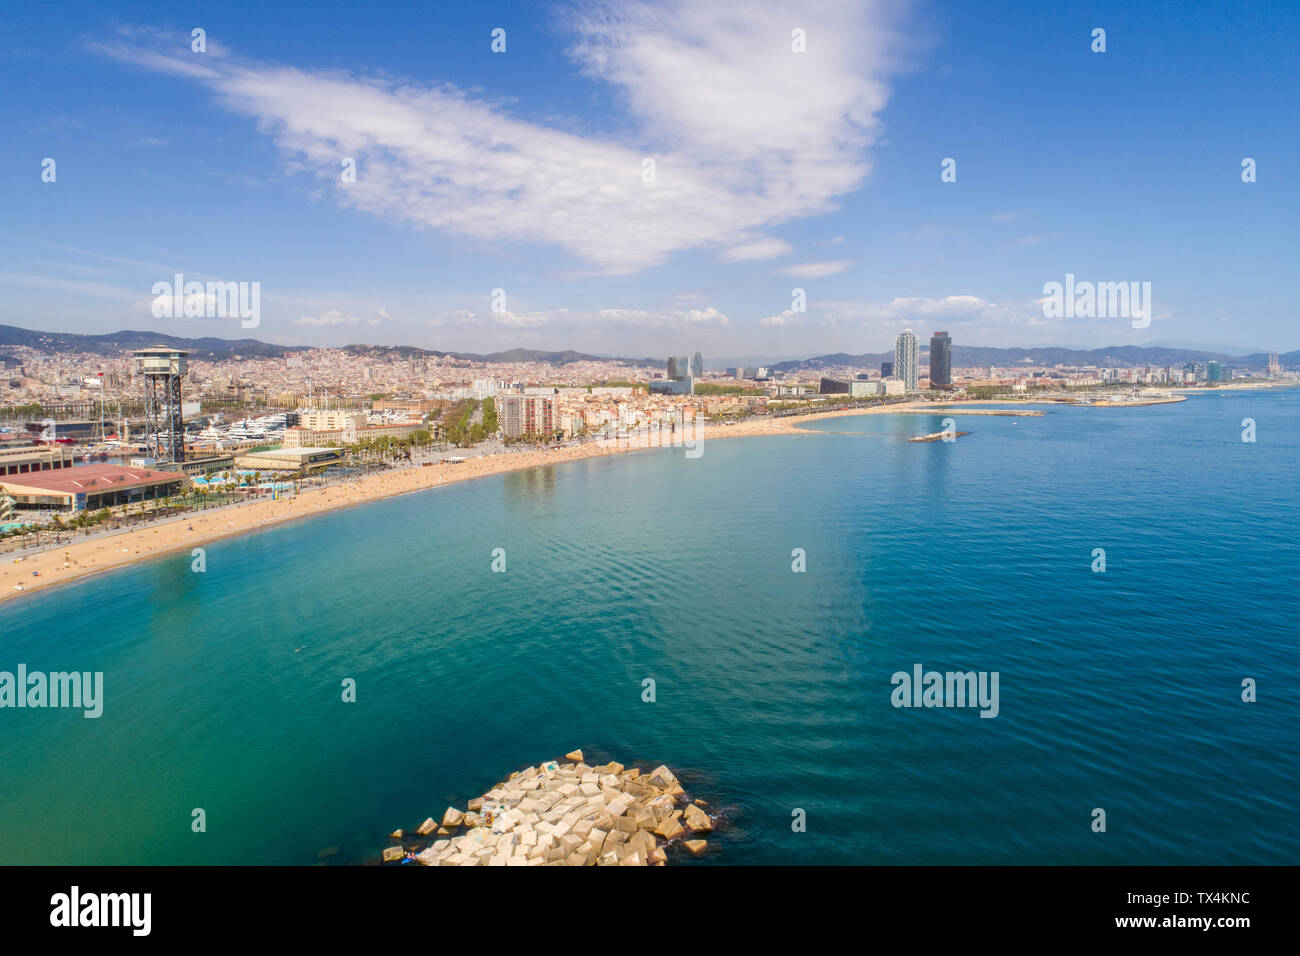 Spagna, Barcellona, vista della spiaggia e del porto da sopra Foto Stock